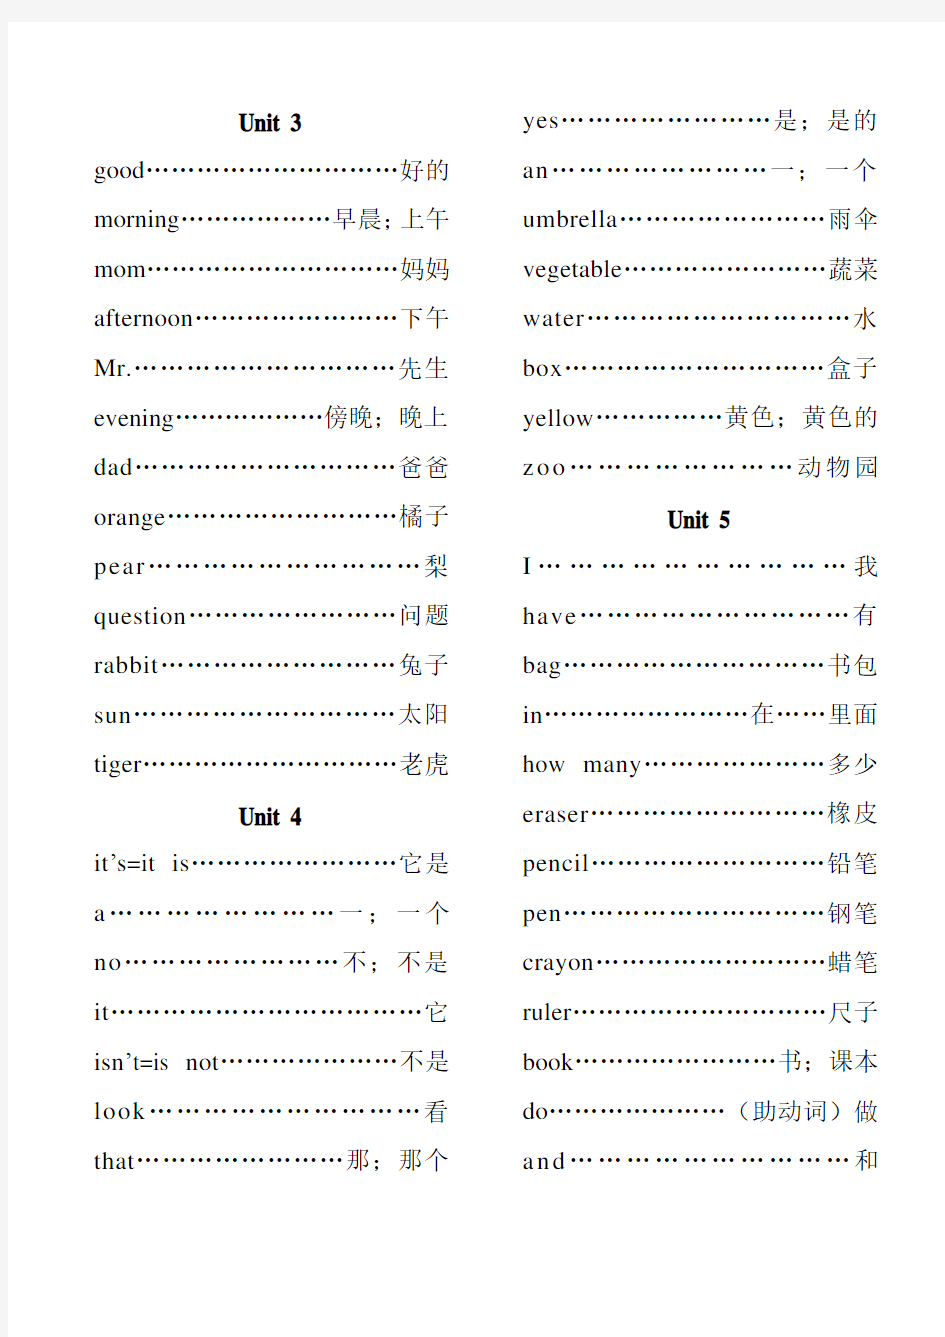 《陕西旅游版小学英语》三年级(上)单元词汇表